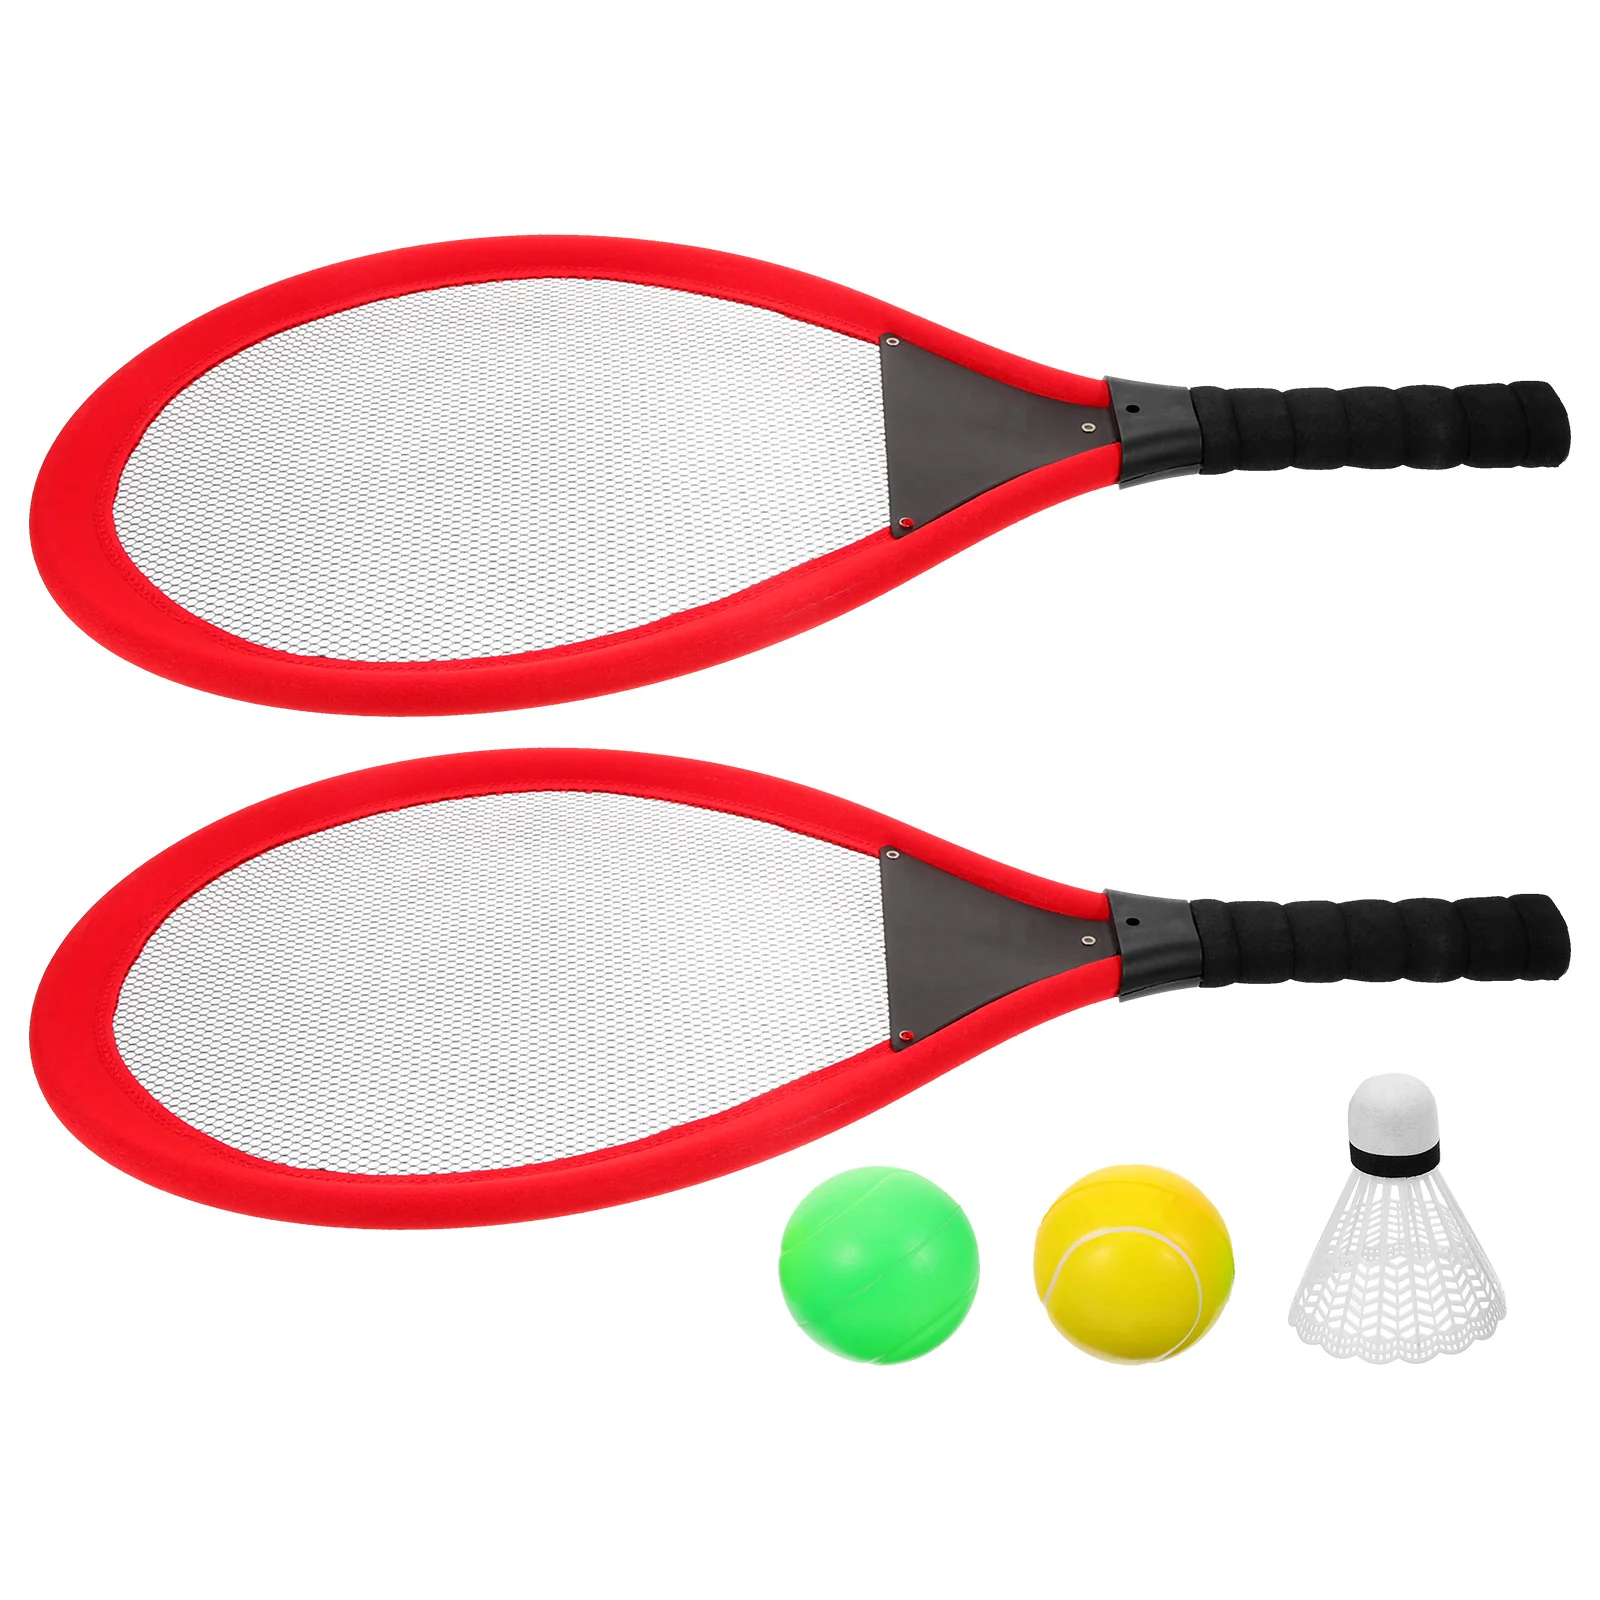 

Ракетка для тенниса для спорта на открытом воздухе, пластиковая игрушка (две красные упаковки), ракетка для бадминтона, Набор для игры в бадминтон, Детская сетка для ракеток